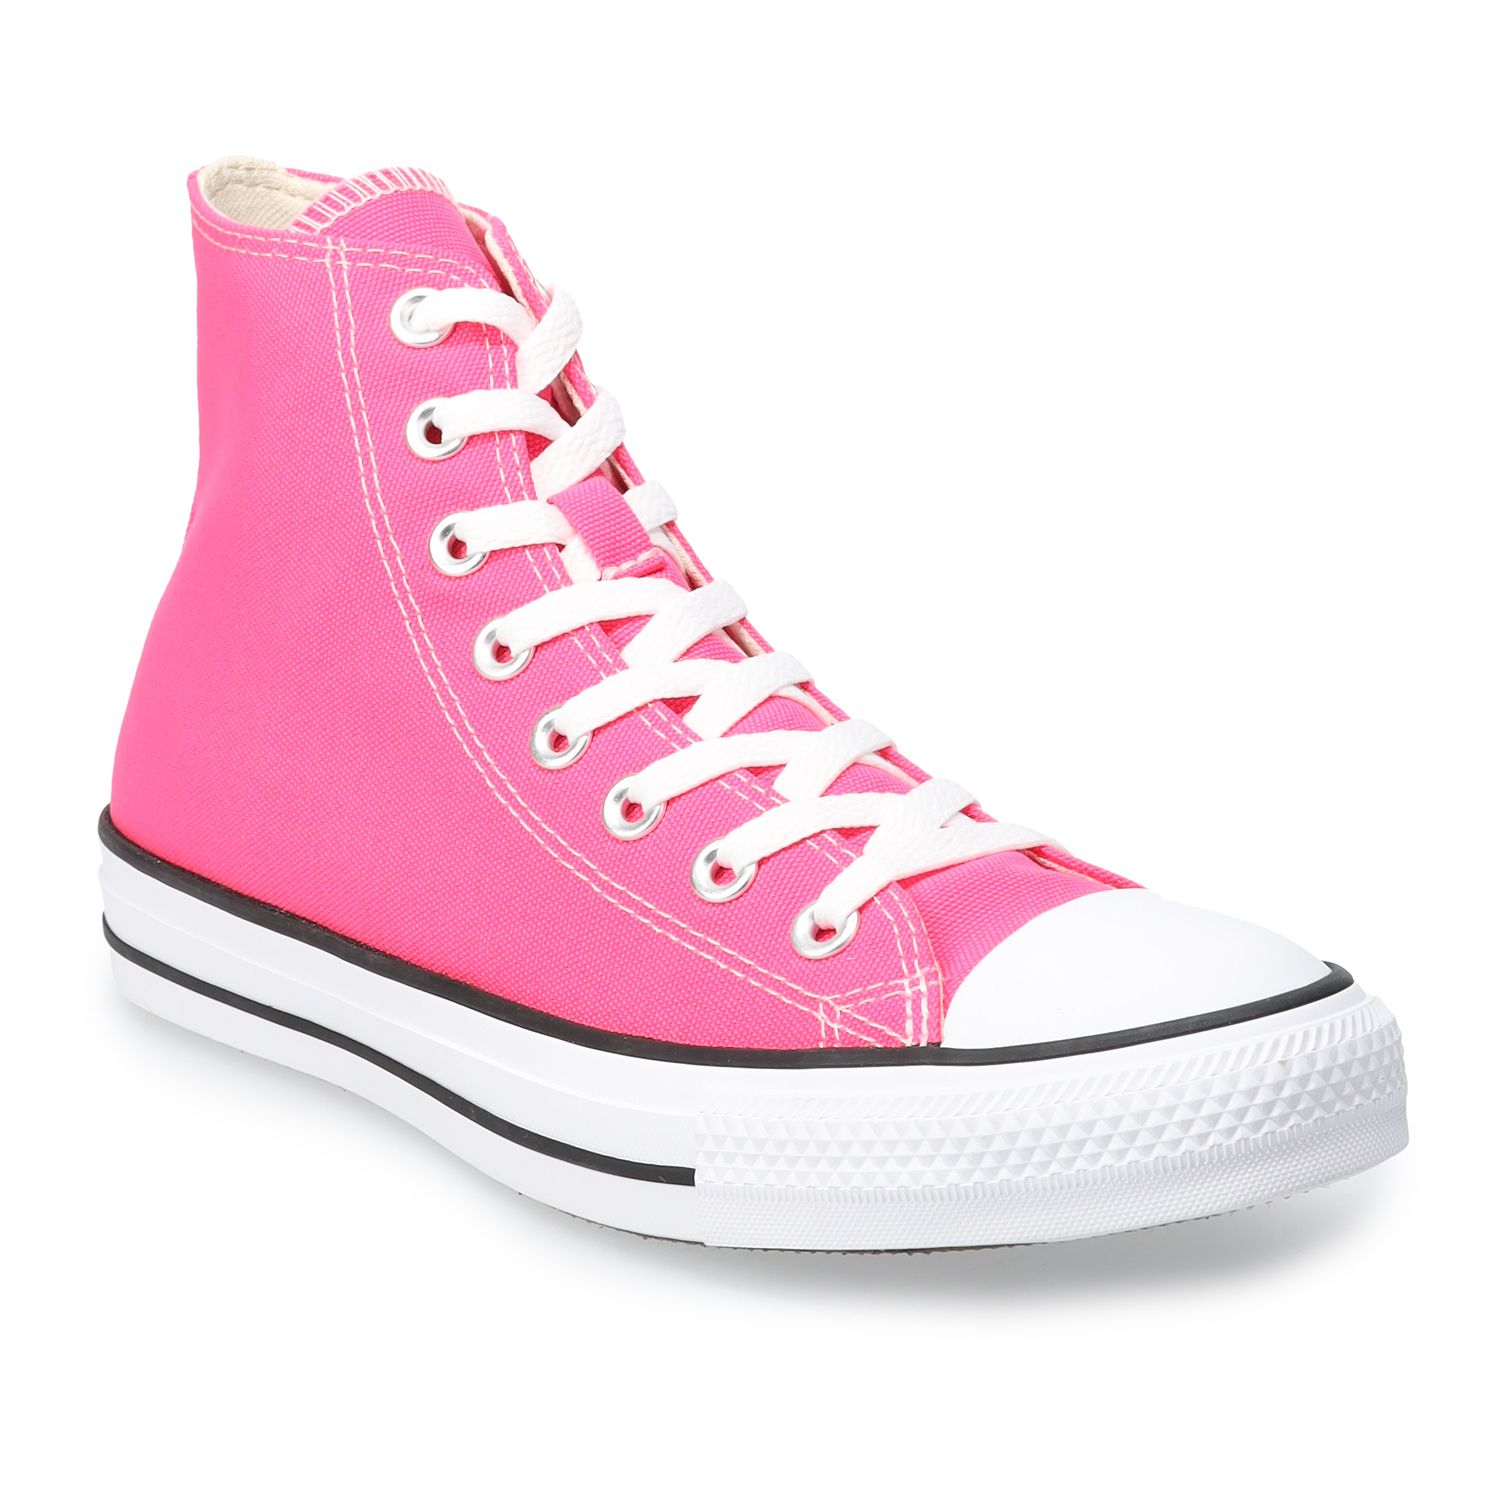 women's pink converse